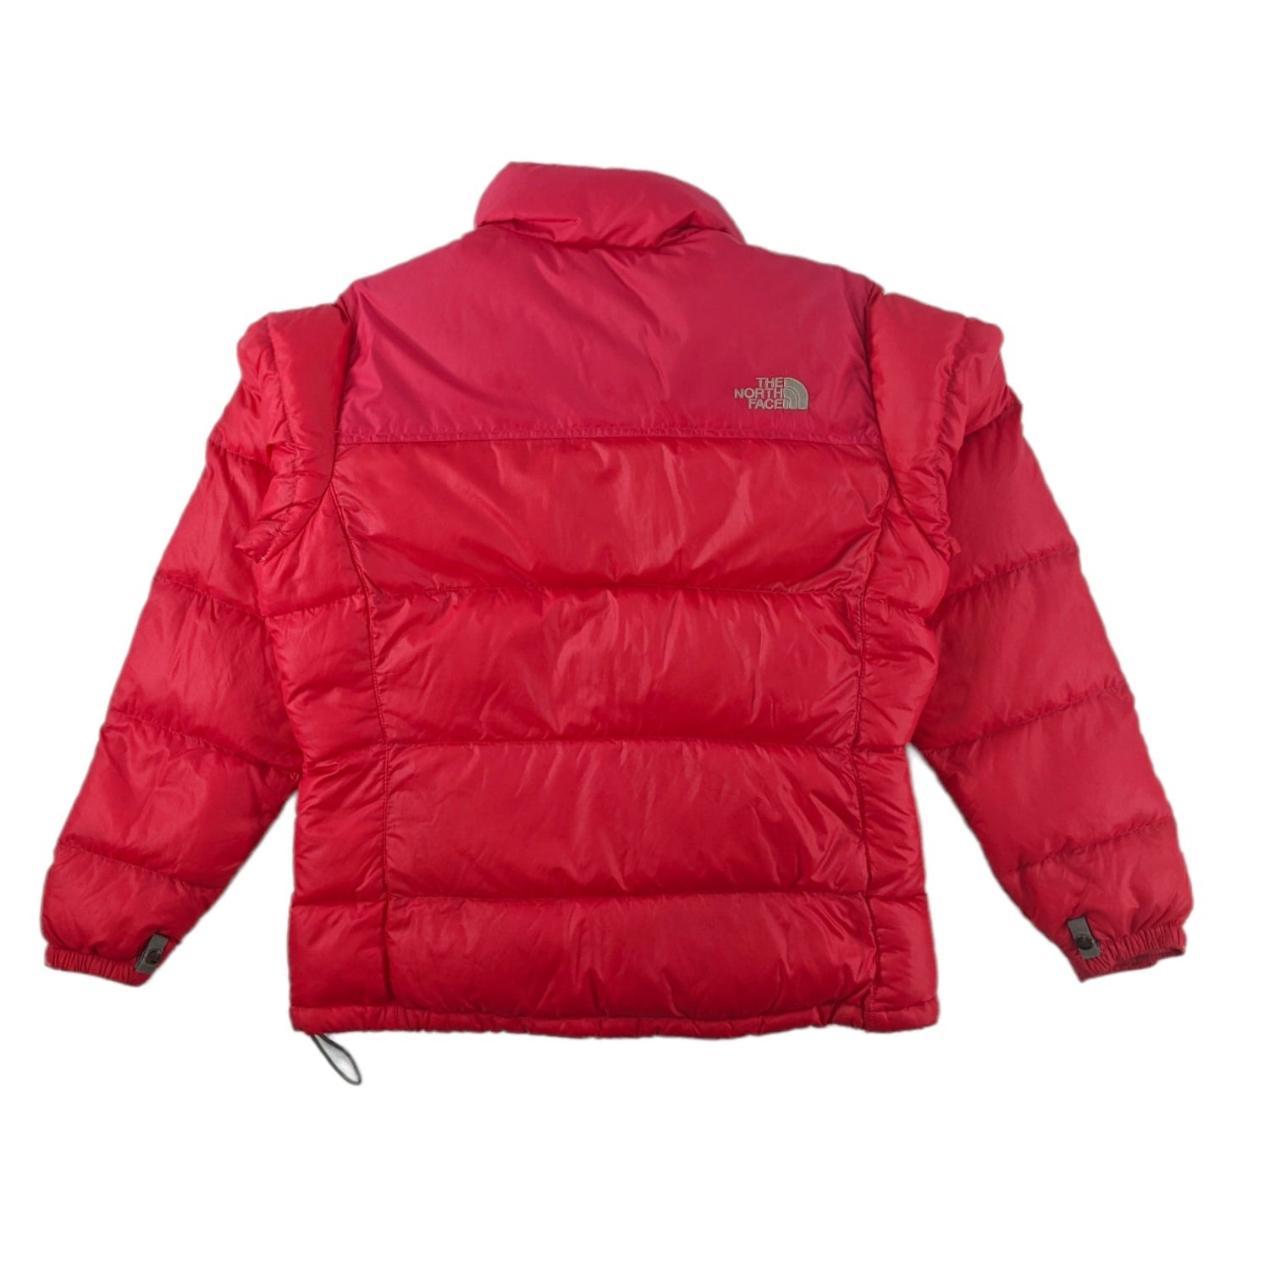 Vintage red North Face nupste 700 puffer jacket... - Depop